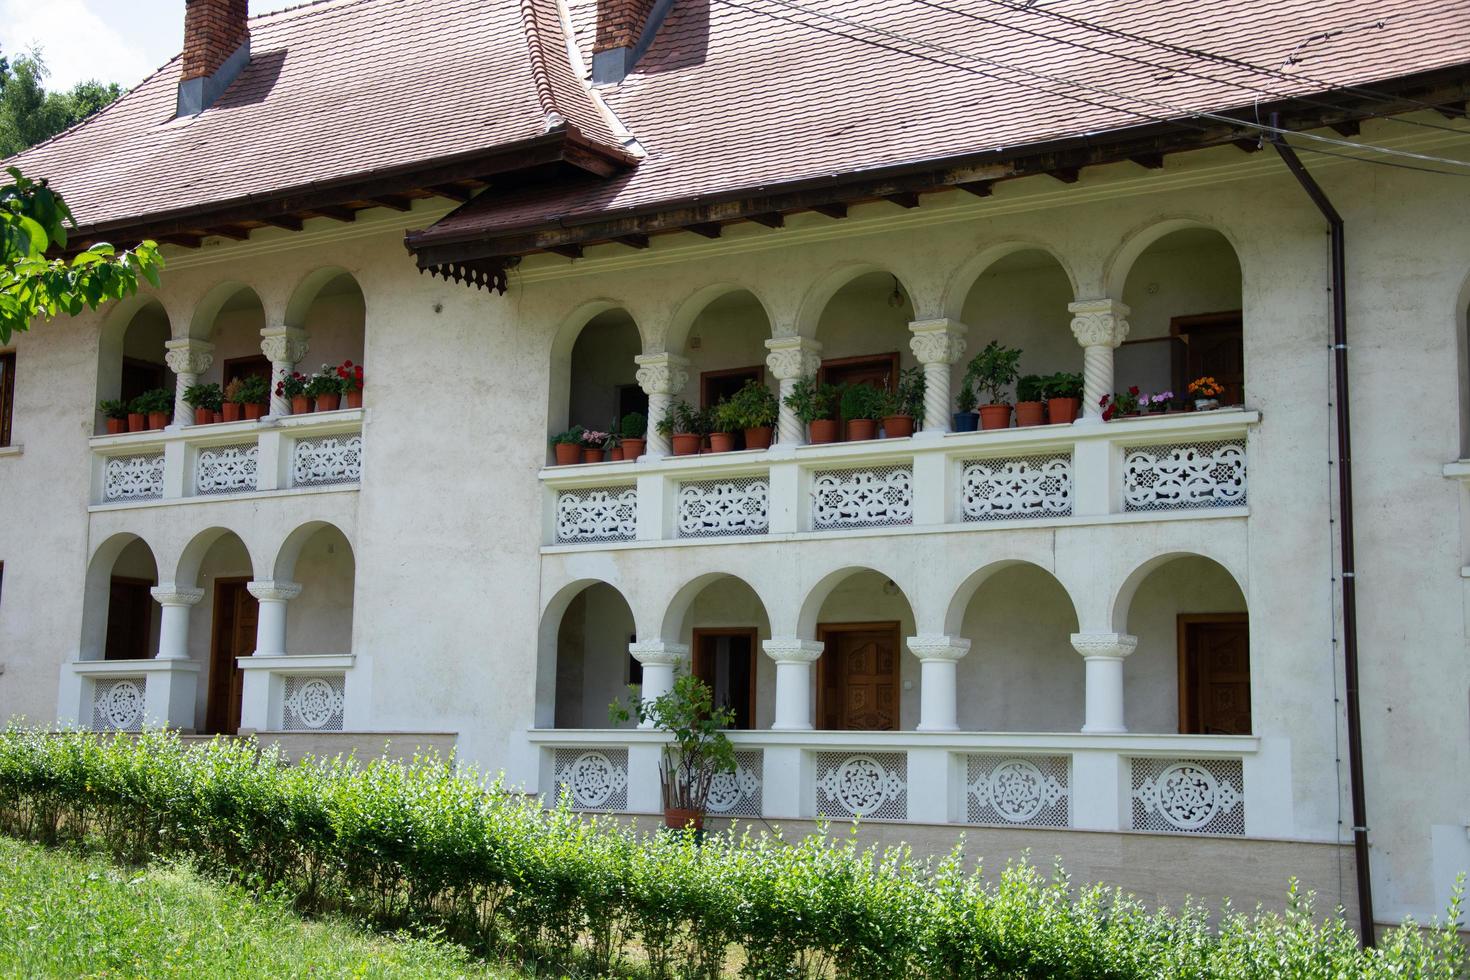 comté de hunedoara, roumanie 2021- le monastère de prislop est un monastère en roumanie photo